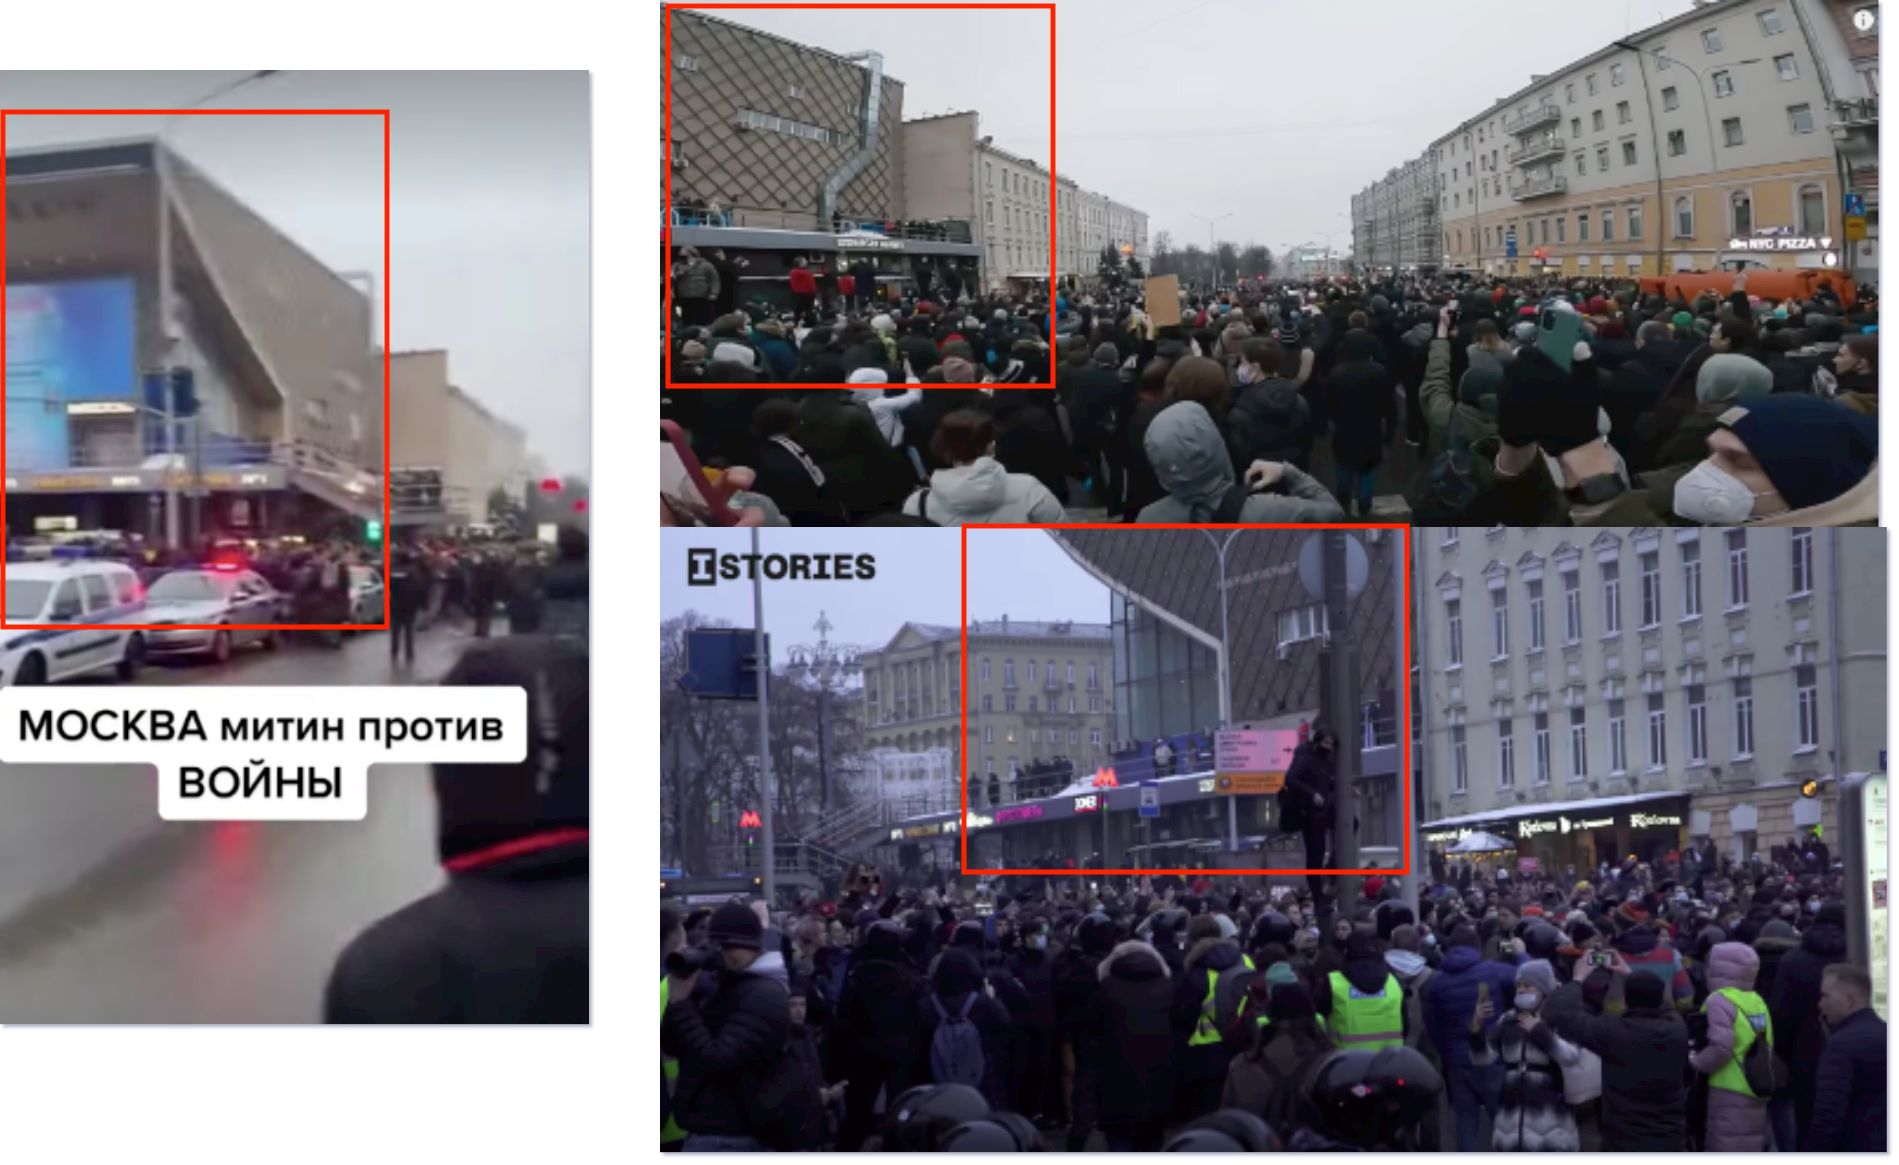 muqayise videonun moskvadaki mitinqi gosterdiyi iddiasi